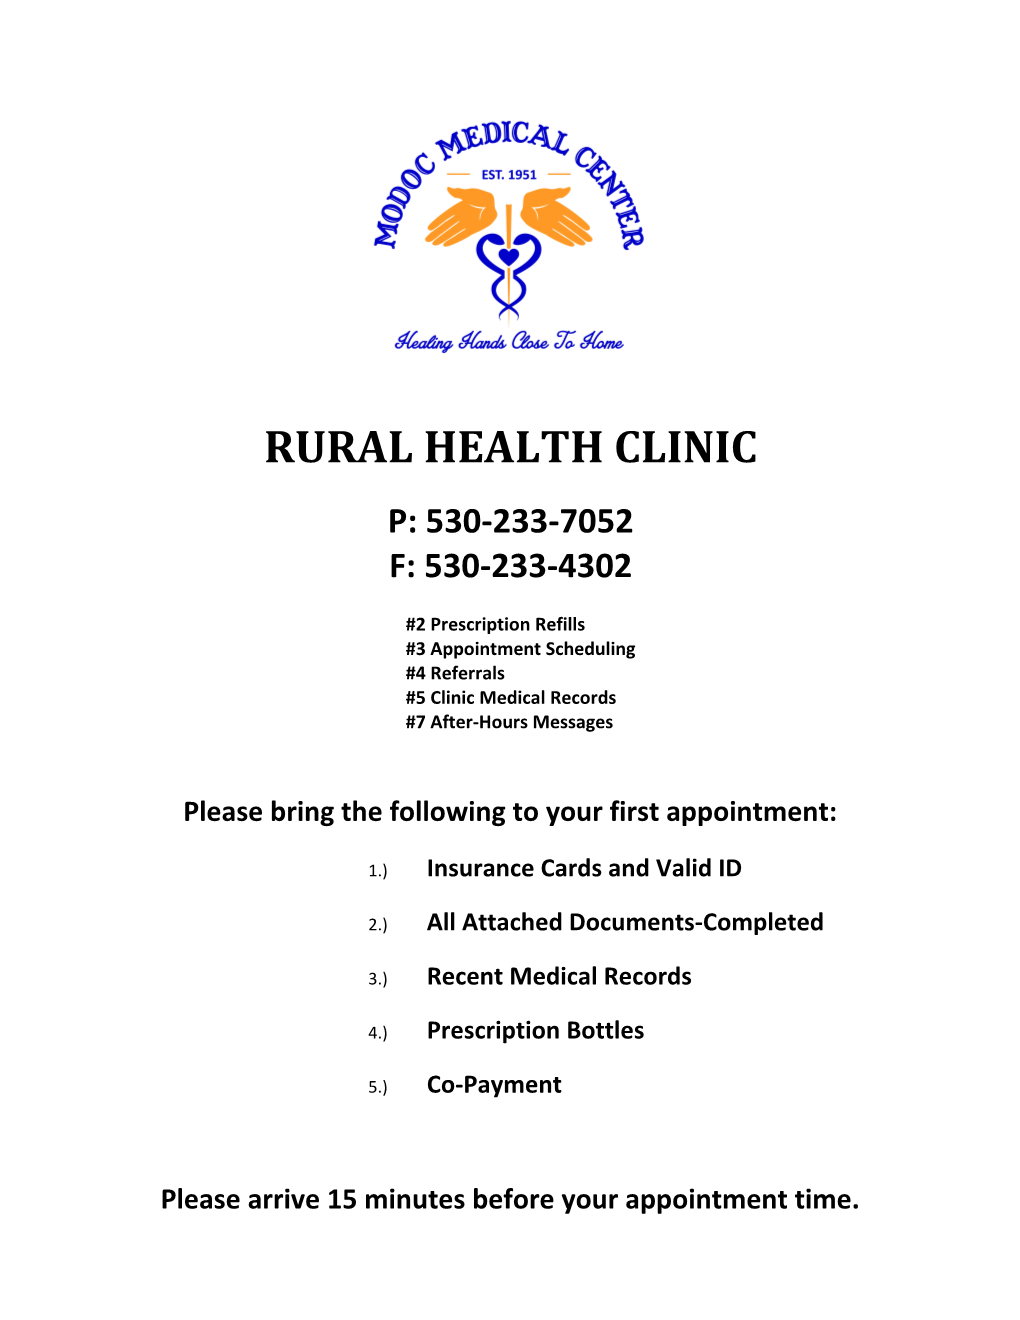 Rural Health Clinic